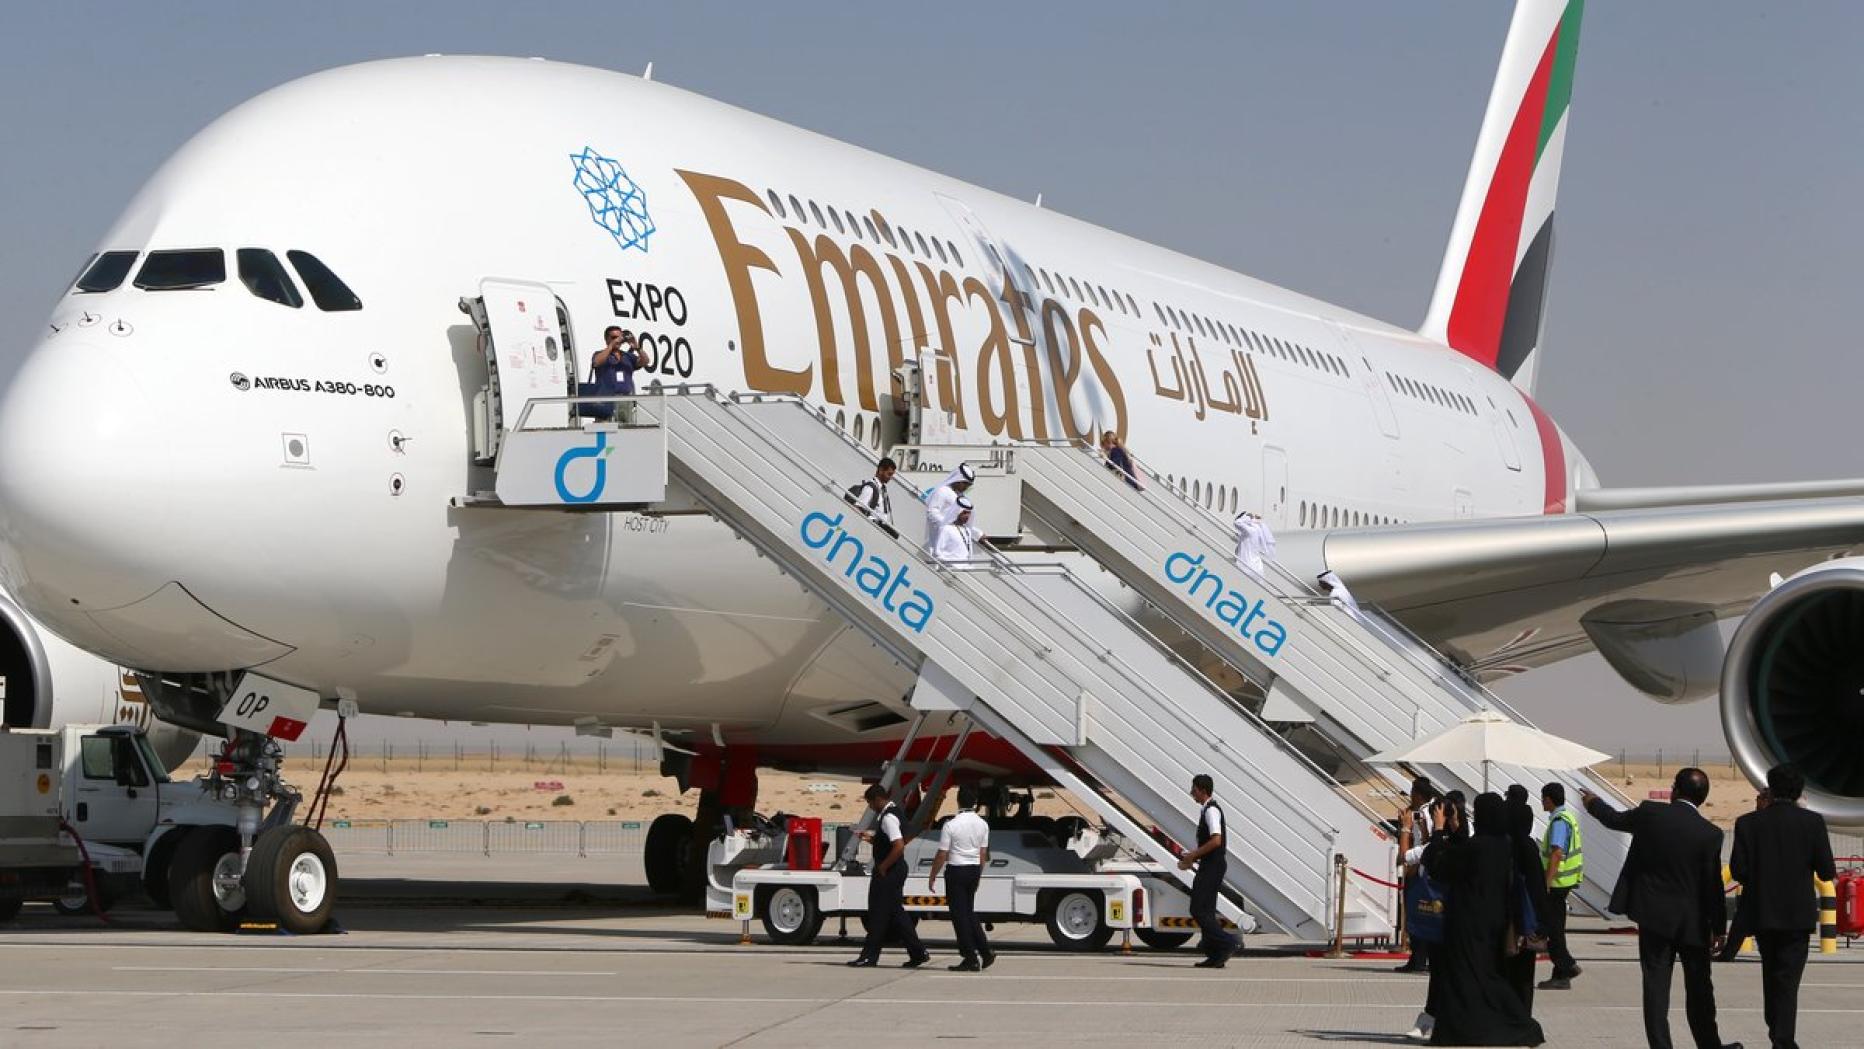 Emirates Mit A380 Im Lande Anflug Auf Wien Kurier At